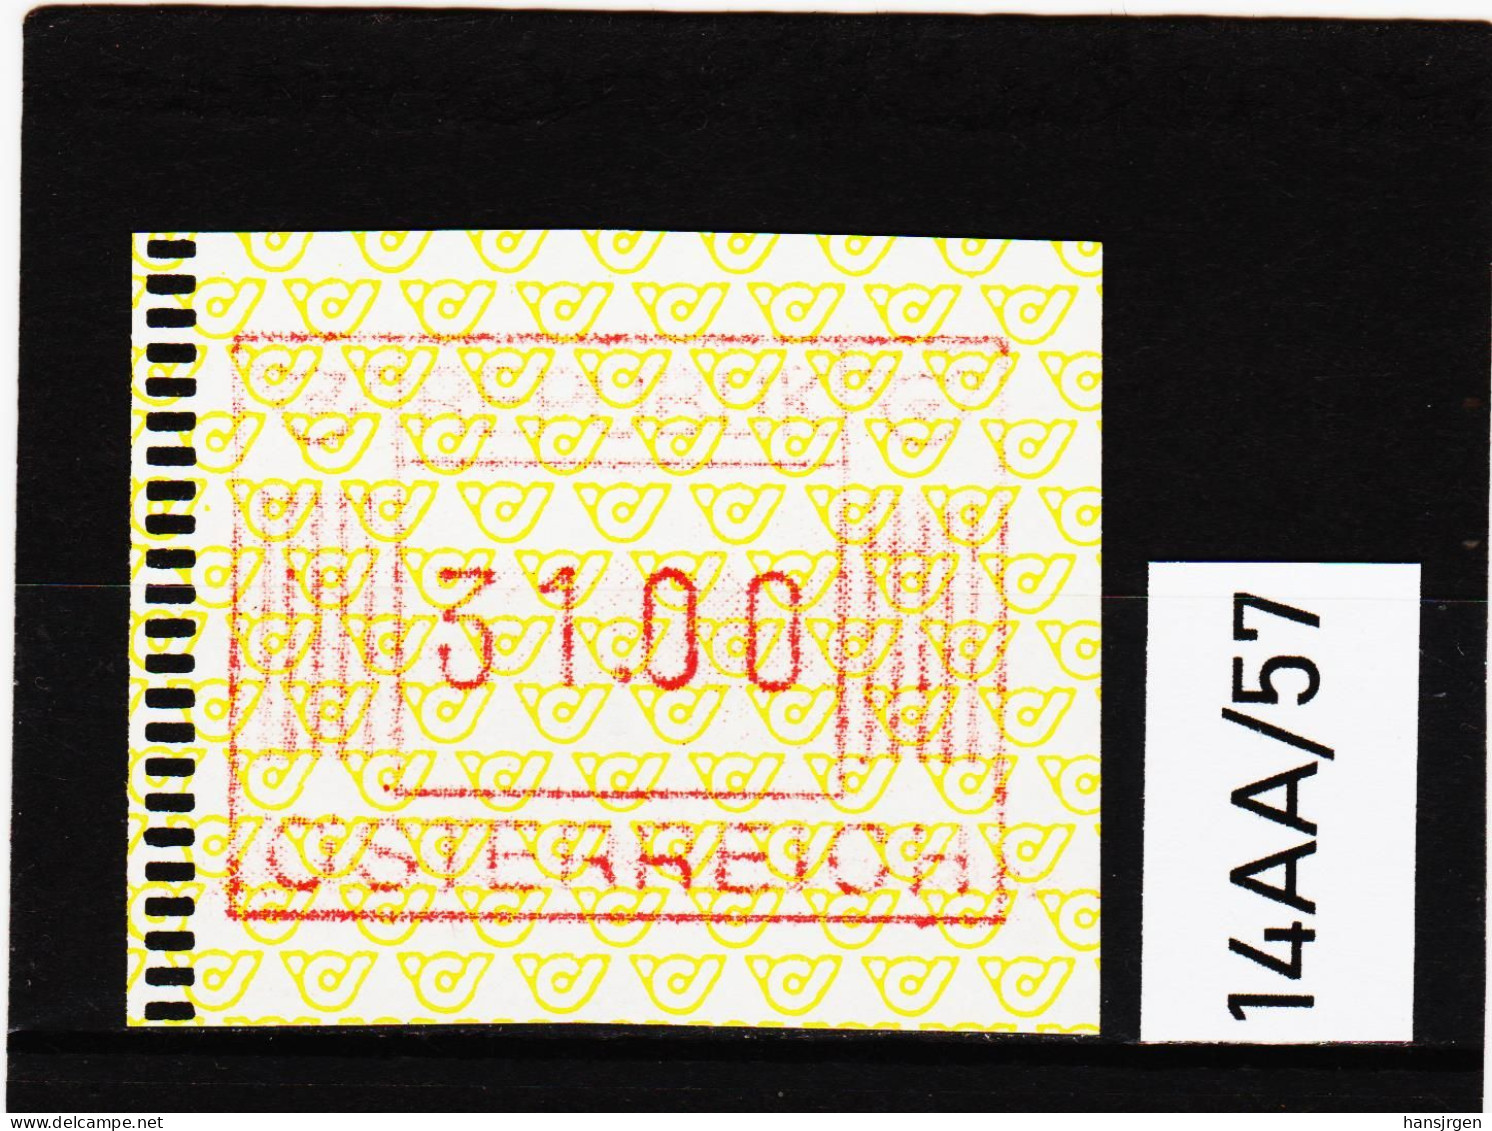 14AA/57  ÖSTERREICH 1983 AUTOMATENMARKEN 1. AUSGABE  31,00 SCHILLING   ** Postfrisch - Automatenmarken [ATM]